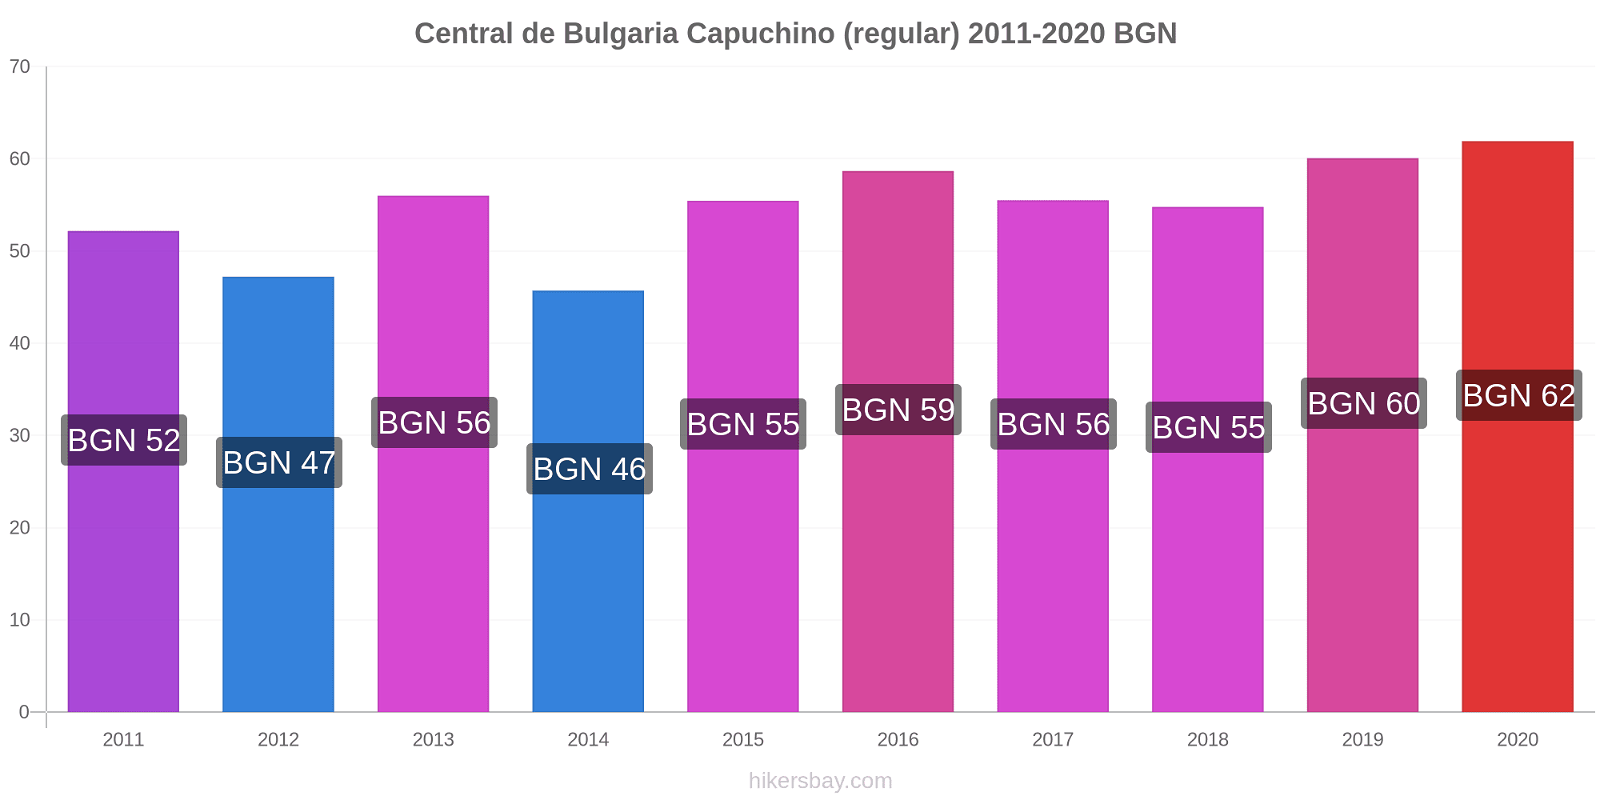 Central de Bulgaria cambios de precios Capuchino (regular) hikersbay.com